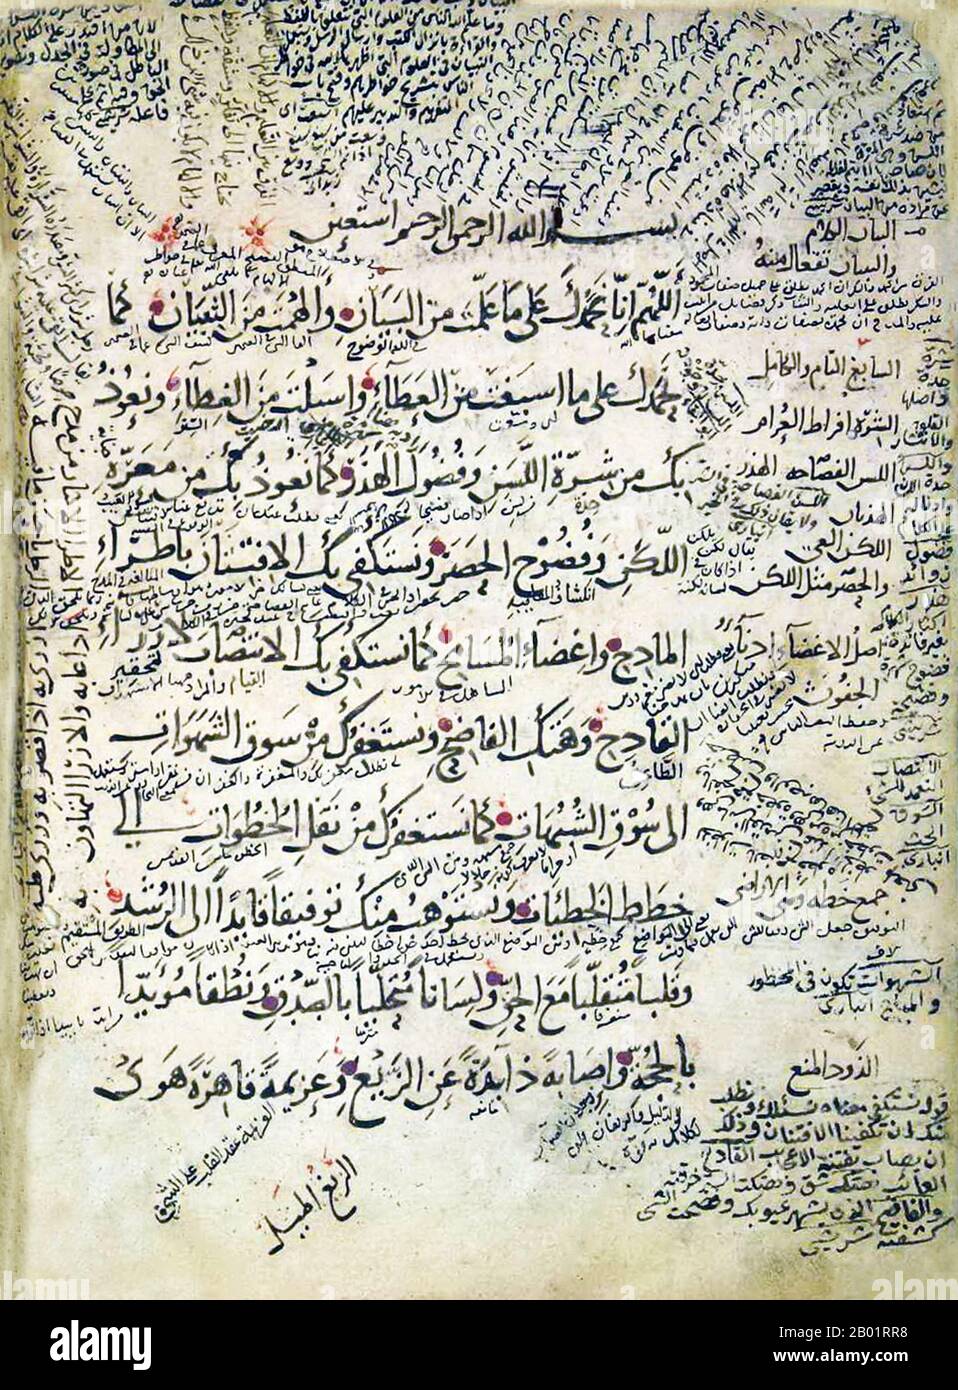 Iraq: Folio da un'edizione di "Maqama" o "Assemblies" di al-Hariri, di Yahya ibn Mahmud al-Wasiti, 1237 d.C. Yahyâ ibn Mahmûd al-Wâsitî è stato un artista arabo islamico del XIII secolo. Al-Wasiti è nato a Wasit, nel sud dell'Iraq. Era noto per le sue illustrazioni del Maqam di al-Hariri. I Maqāma (letteralmente "assemblee") sono un genere letterario arabo (originariamente) di prosa rimata con intervalli di poesia in cui la stravaganza retorica è evidente. Si dice che l'autore del X secolo Badī' al-Zaman al-Hamadhāni abbia inventato la forma, che fu estesa da al-Hariri di Bassora nel secolo successivo. Foto Stock